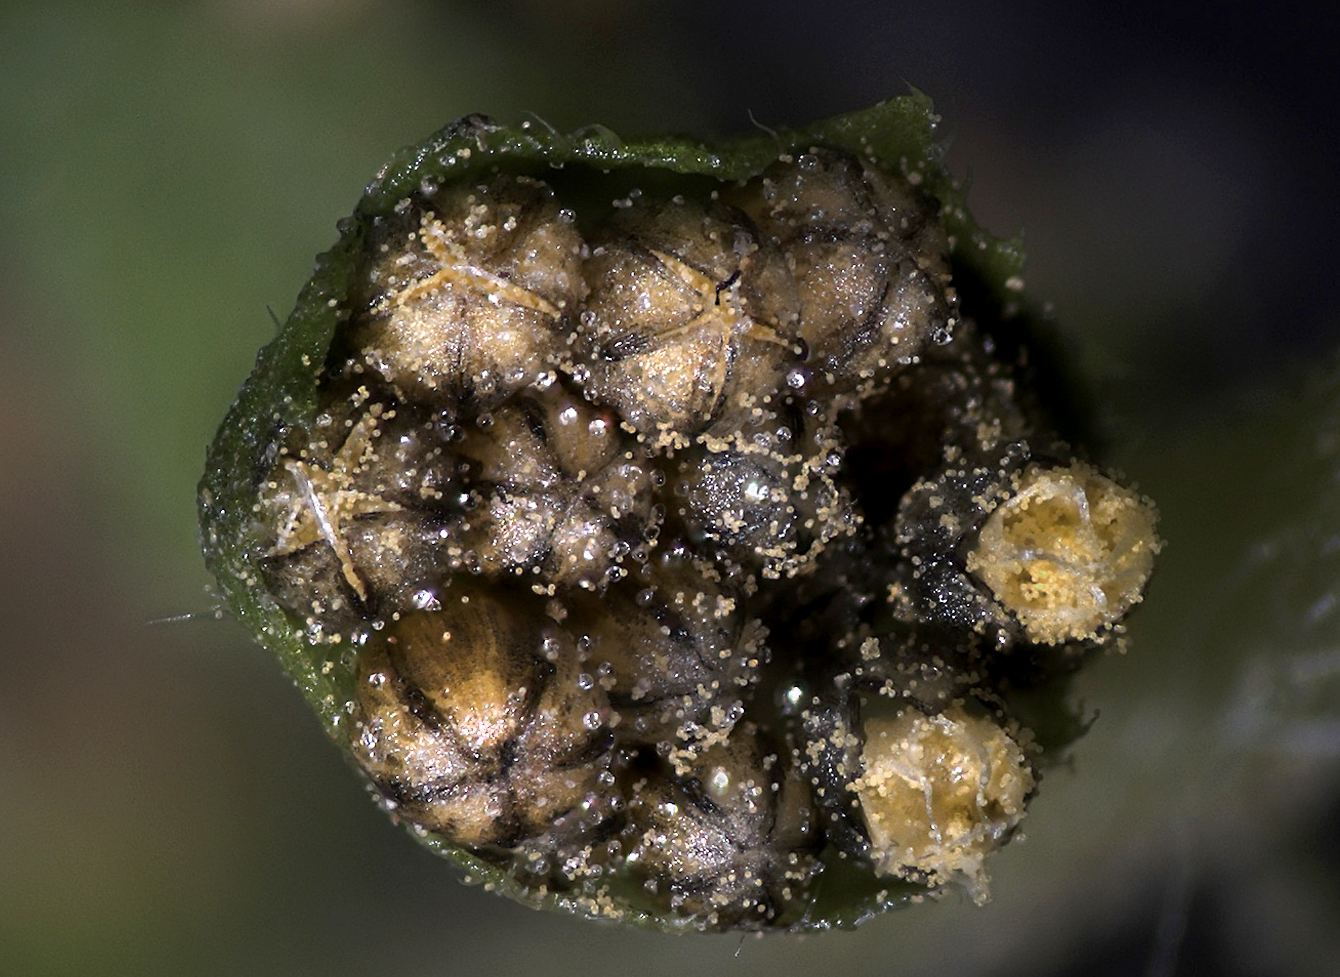 Blütenkörbchen mit männlichen Blüten und Pollen